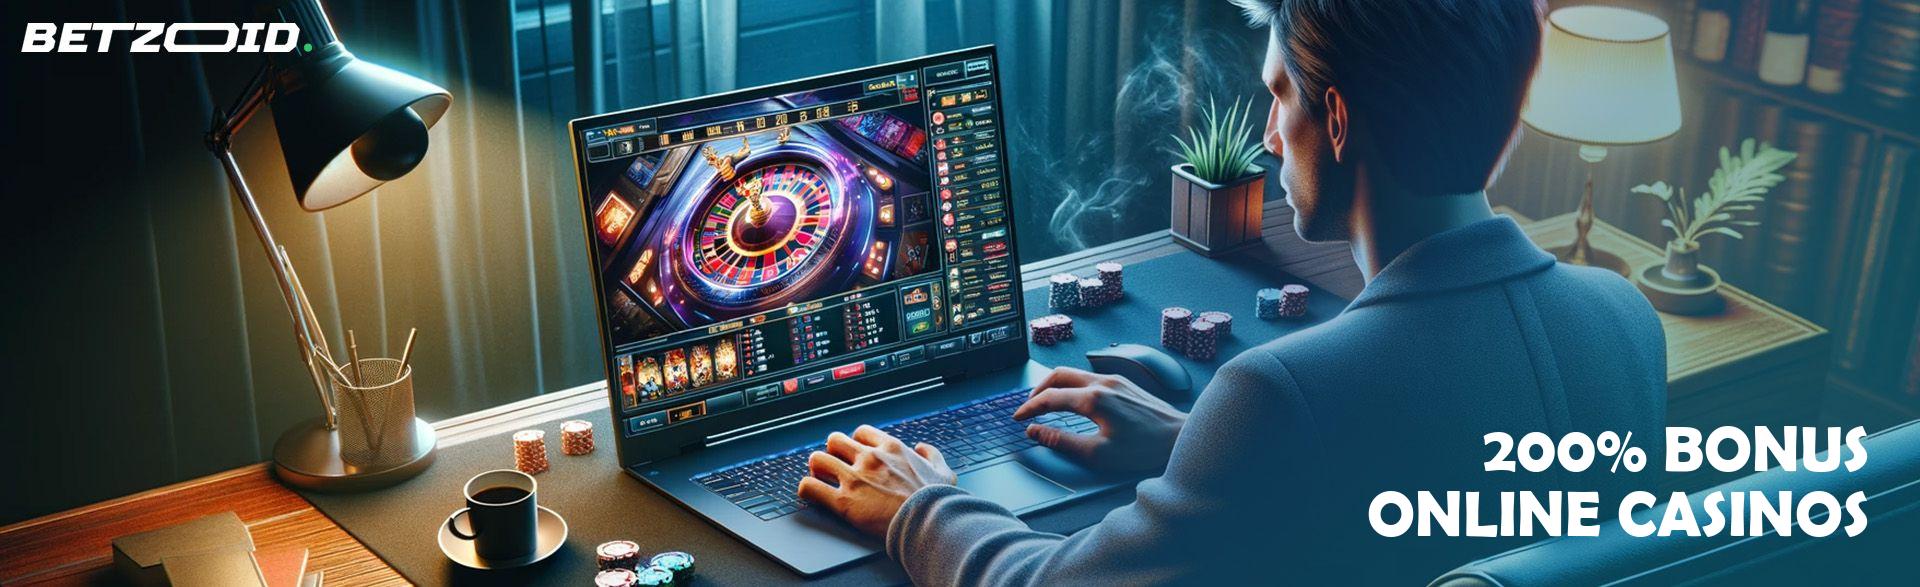 200% Bonus Online Casinos.